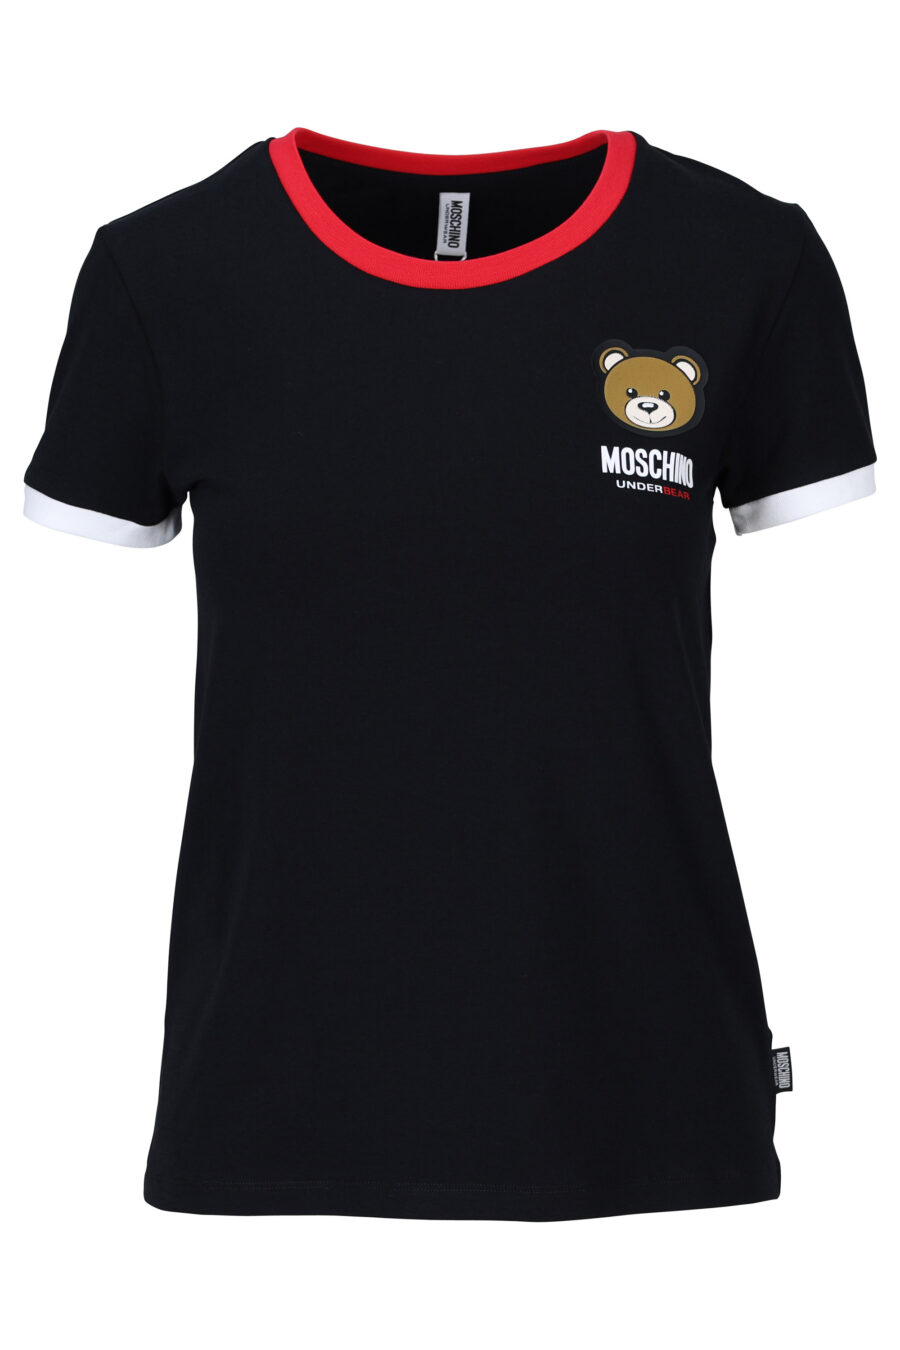 Camiseta negra con rojo y logo oso "underbear" parche - 667113062082